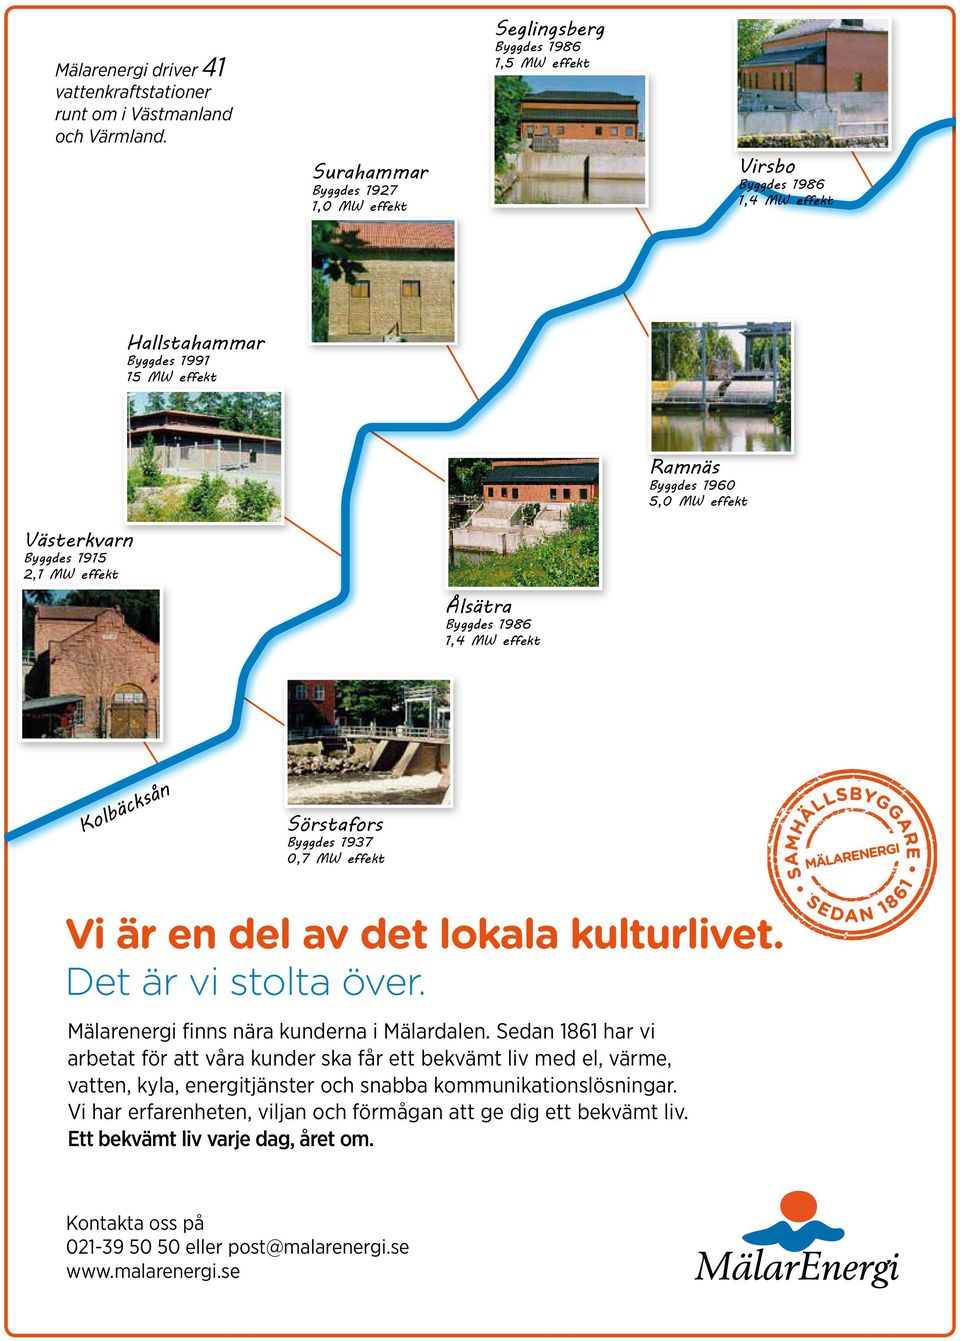 Byggdes 1915 2,1 MW effekt Ålsätra Byggdes 1986 1,4 MW effekt Kolbäcksån Sörstafors Byggdes 1937 0,7 MW effekt Vi är en del av det lokala kulturlivet. Det är vi stolta över.